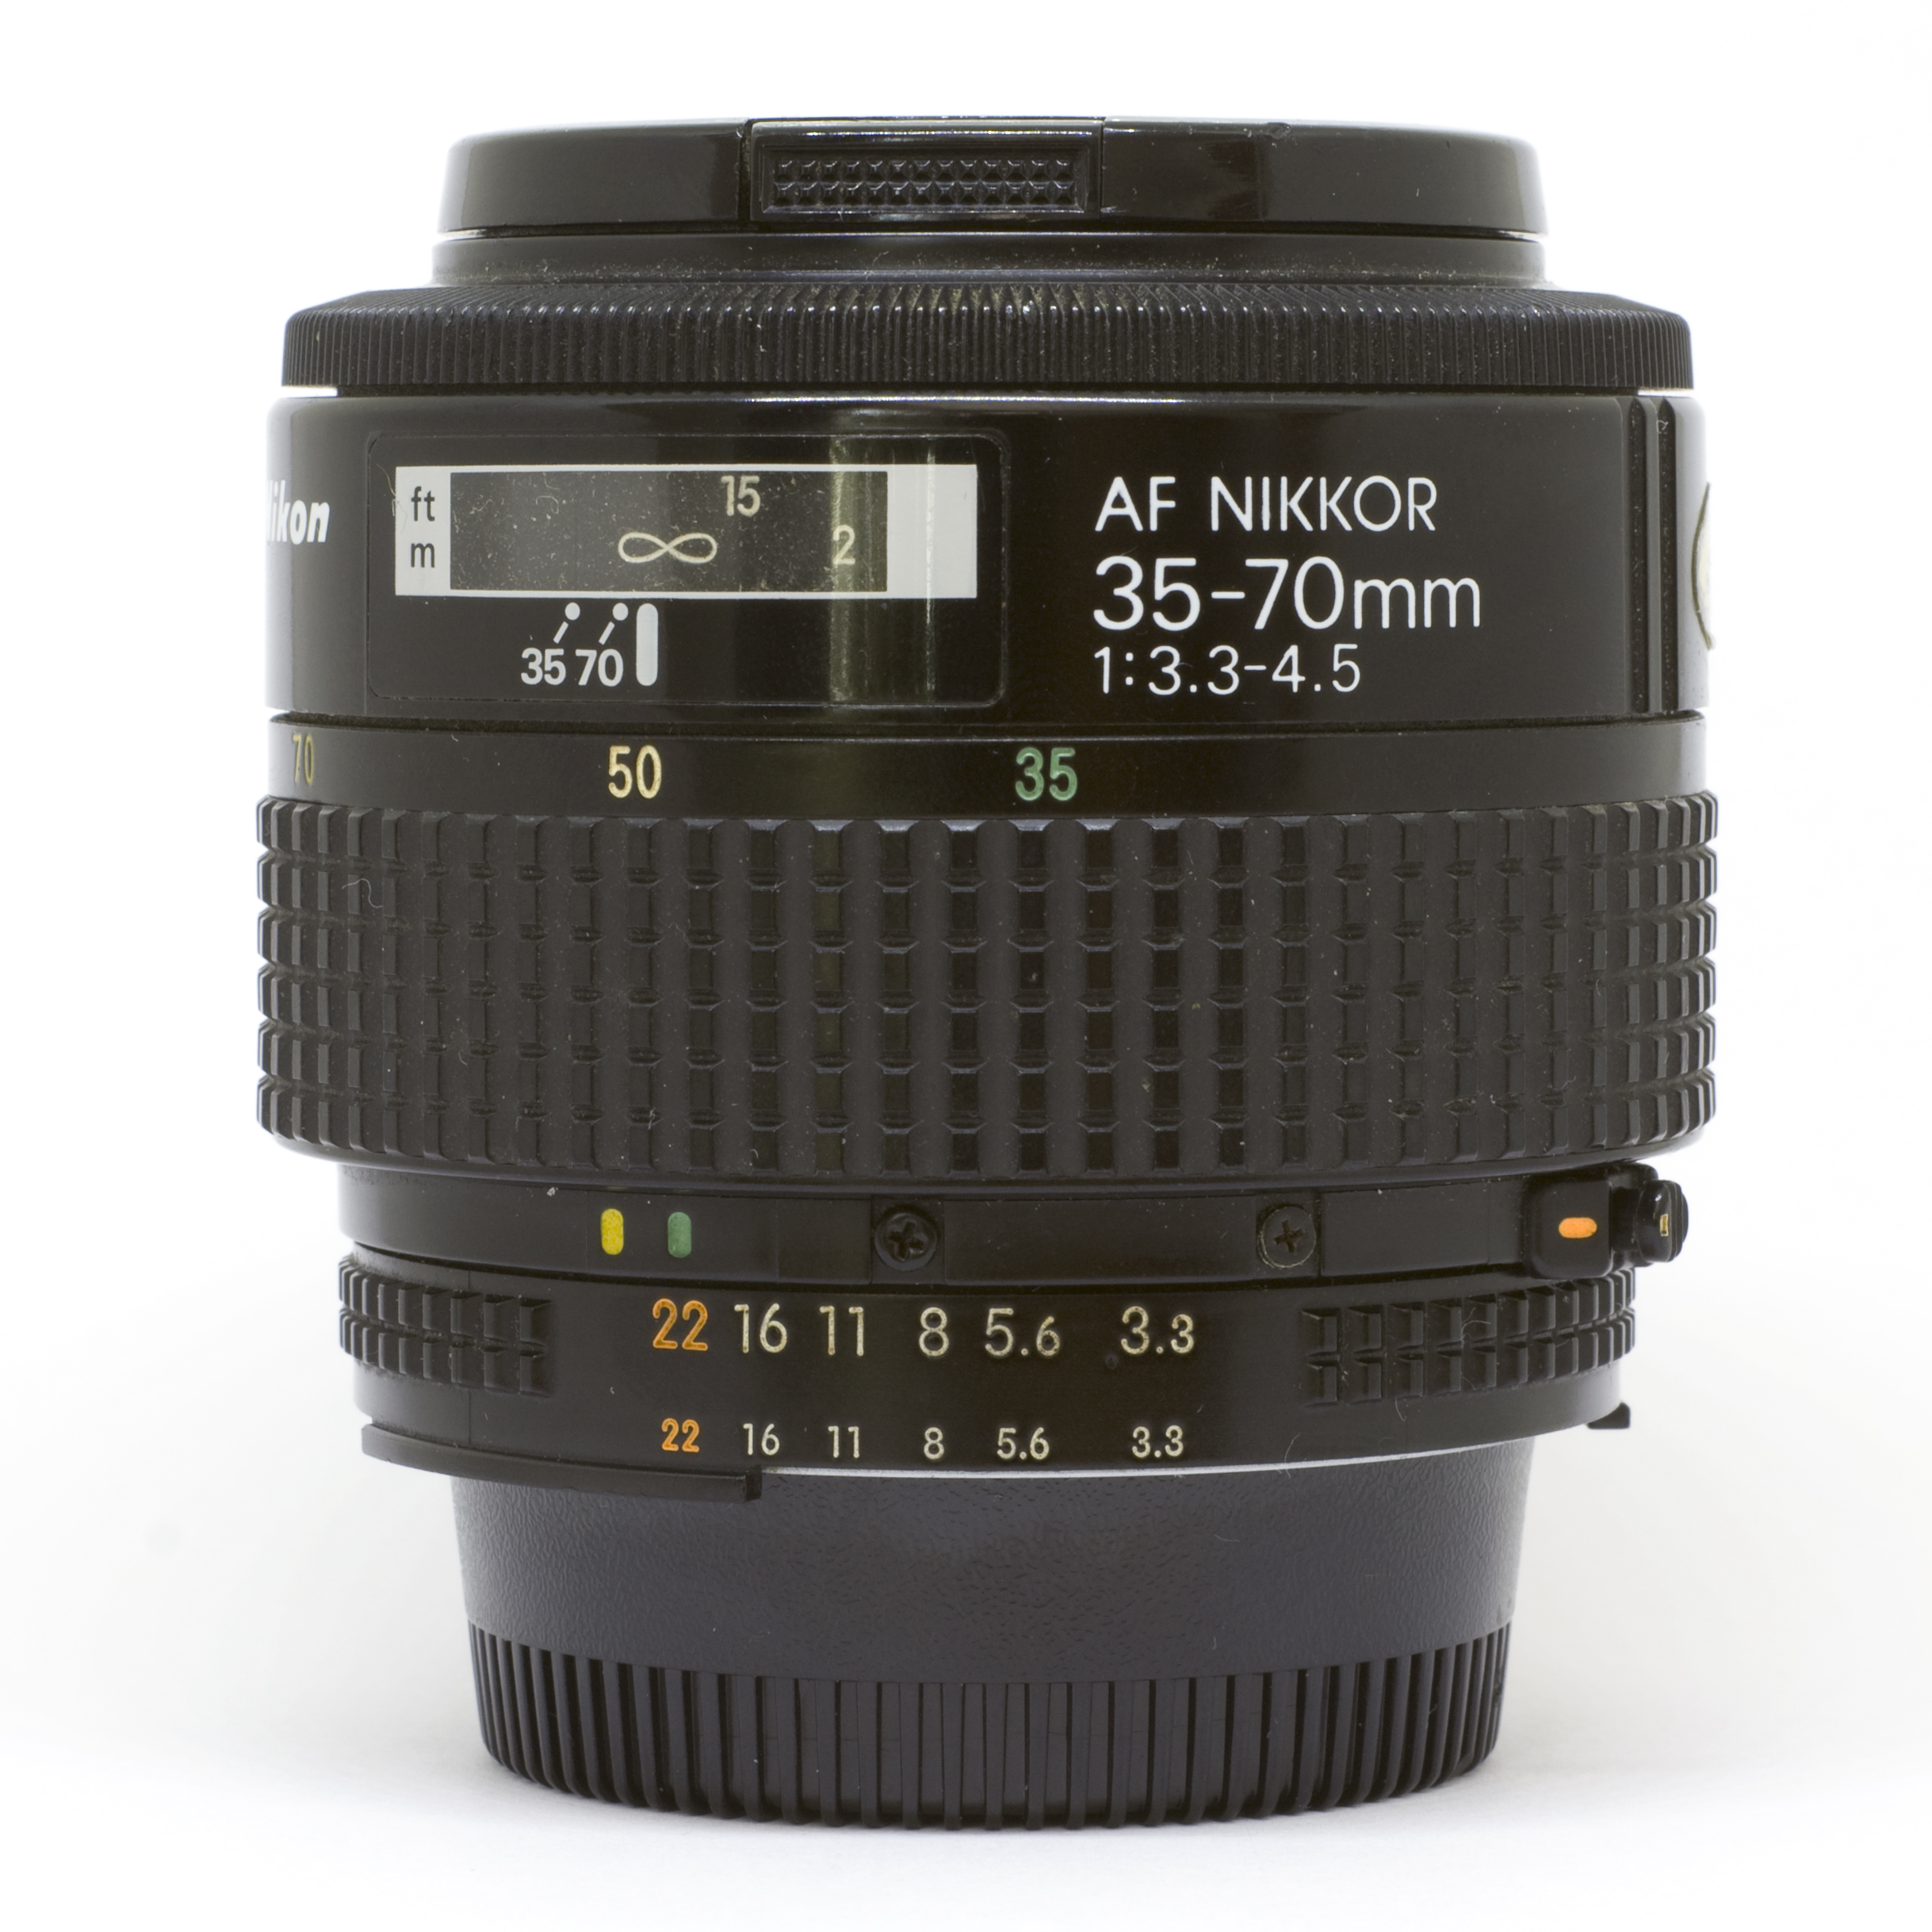 File:Nikon AF Nikkor 35-70 mm F3.3-4.5 (I) Lens.jpg - Wikipedia